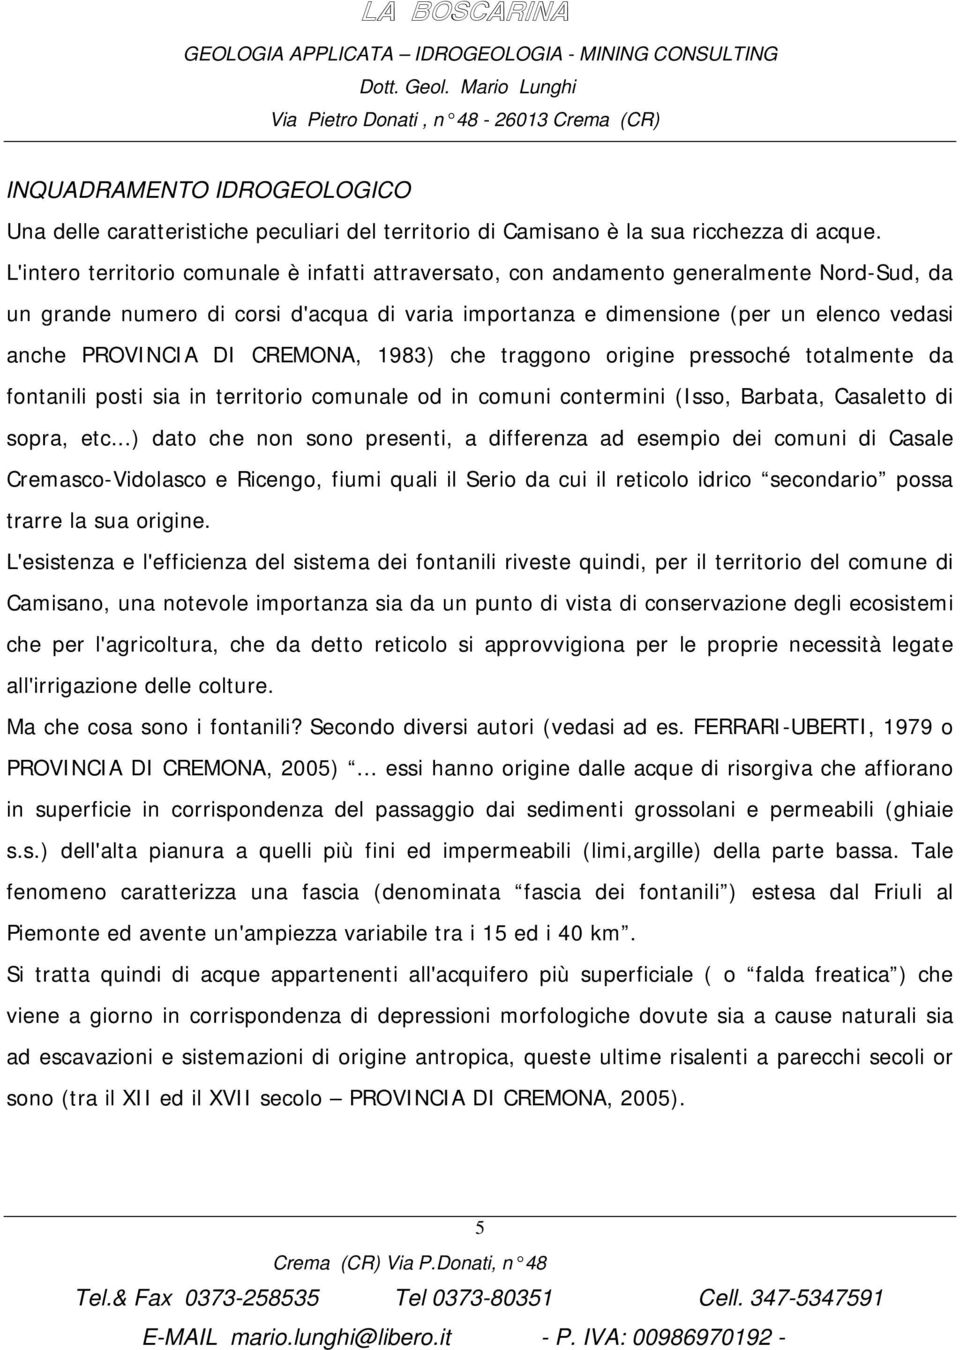 DI CREMONA, 1983) che traggono origine pressoché totalmente da fontanili posti sia in territorio comunale od in comuni contermini (Isso, Barbata, Casaletto di sopra, etc.